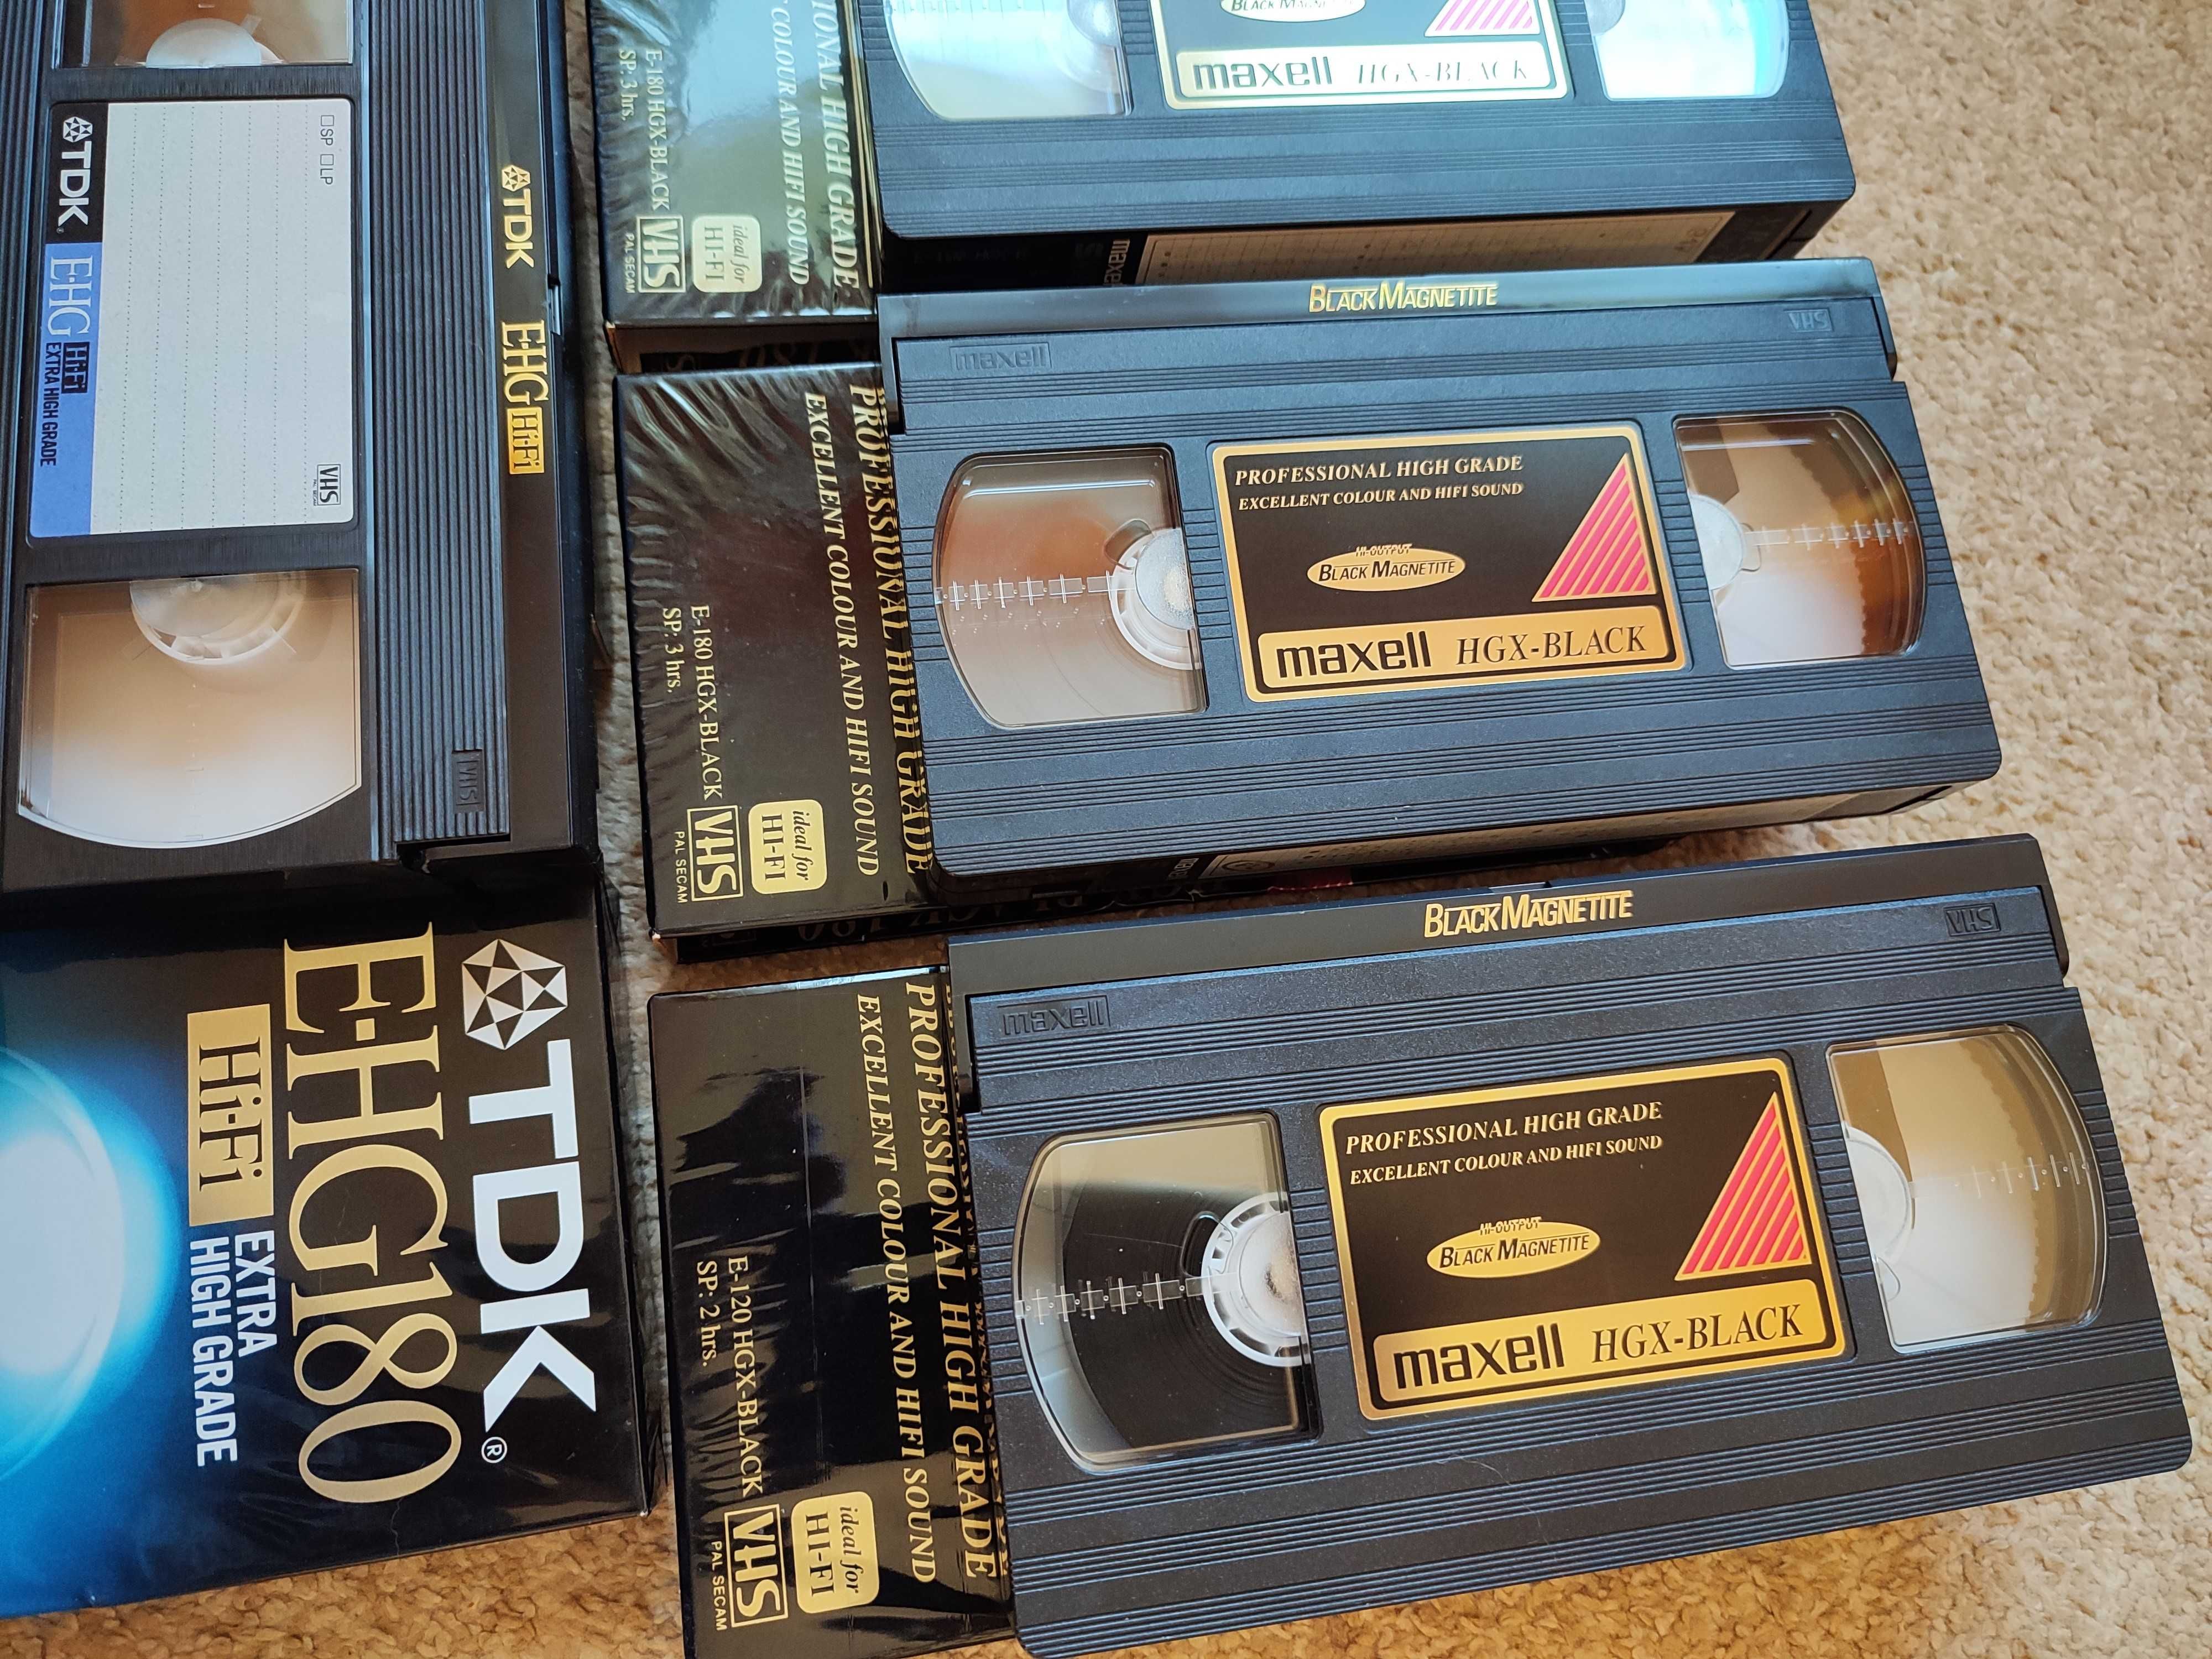 Kasety video VHS HiFI / S-VHS, 7 sztuk cena za zestaw, niemal jak nowe